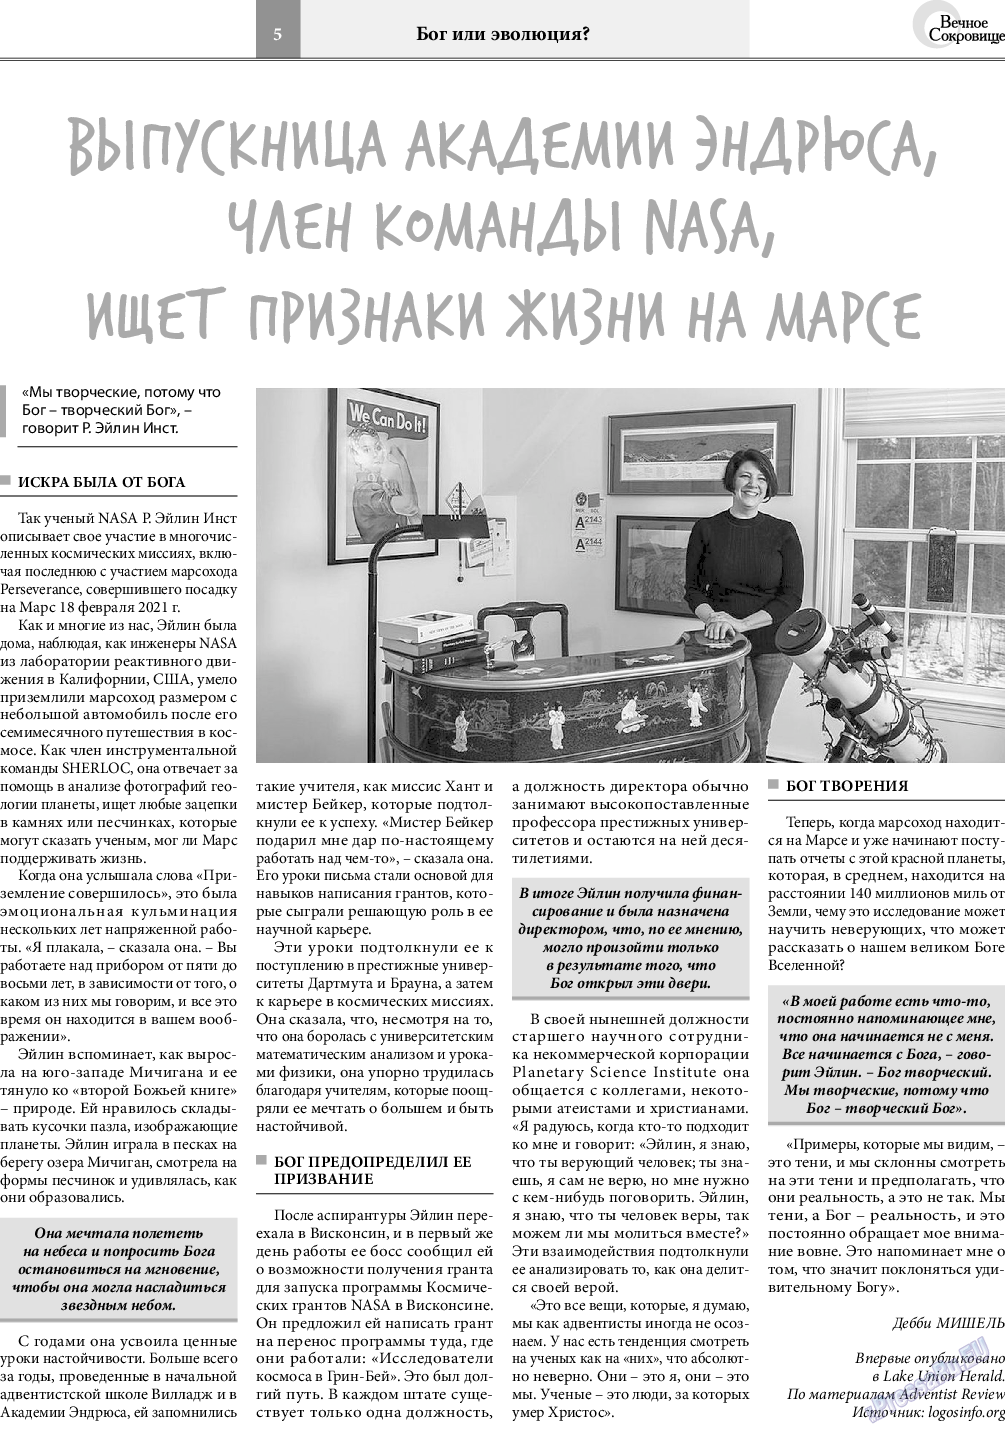 Вечное сокровище, газета. 2021 №2 стр.5